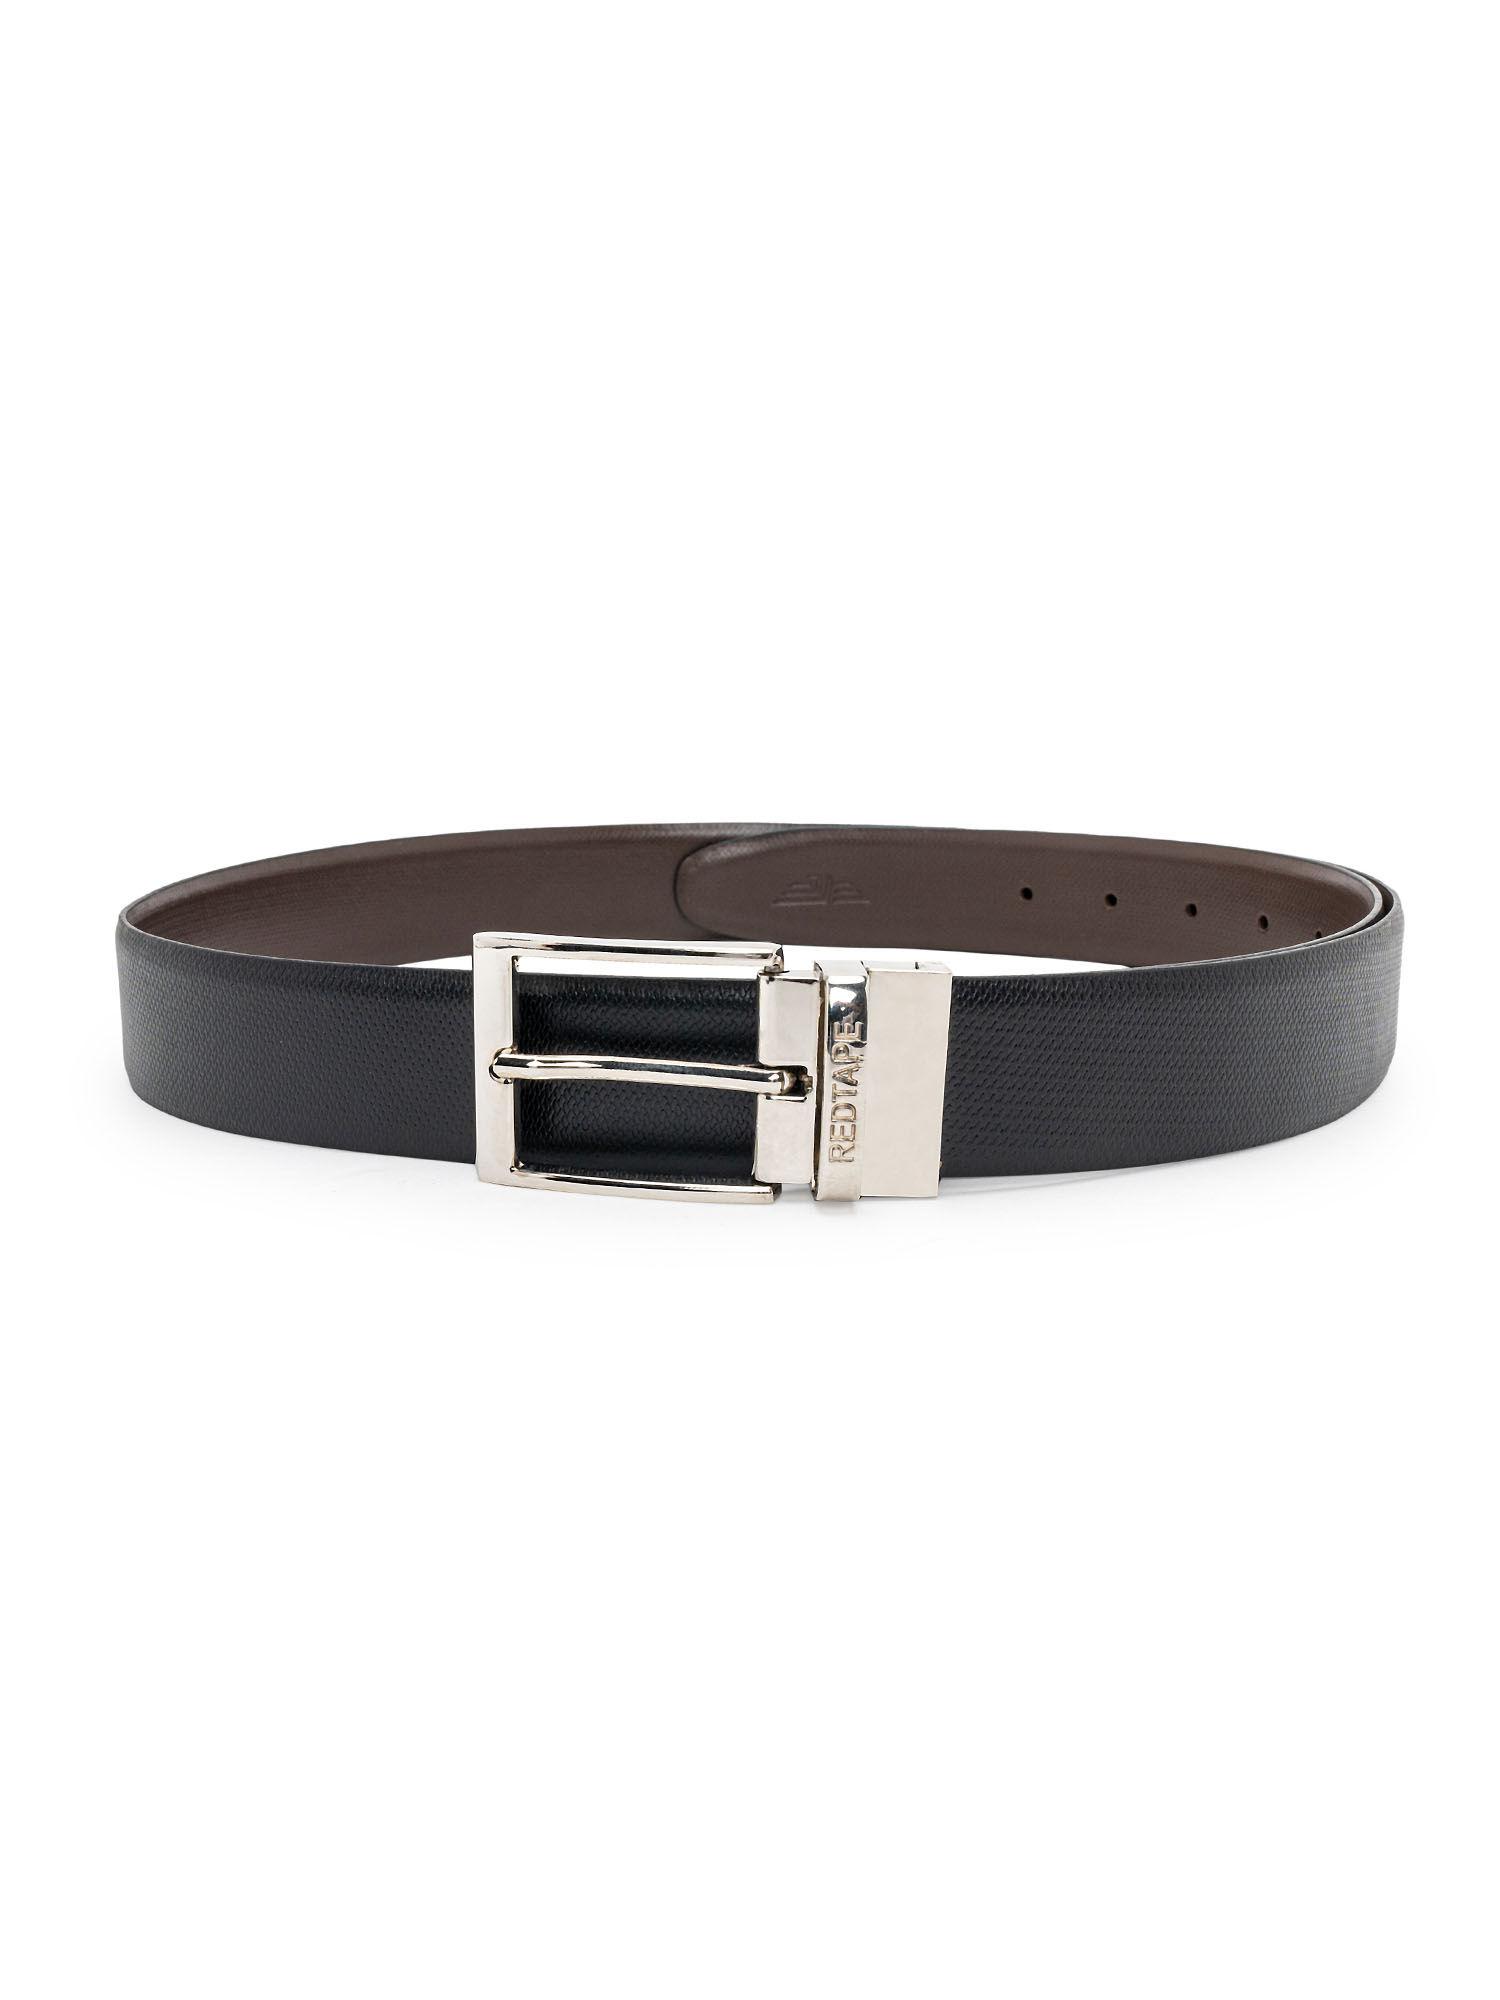 mens-black-brown-split-leather-belt